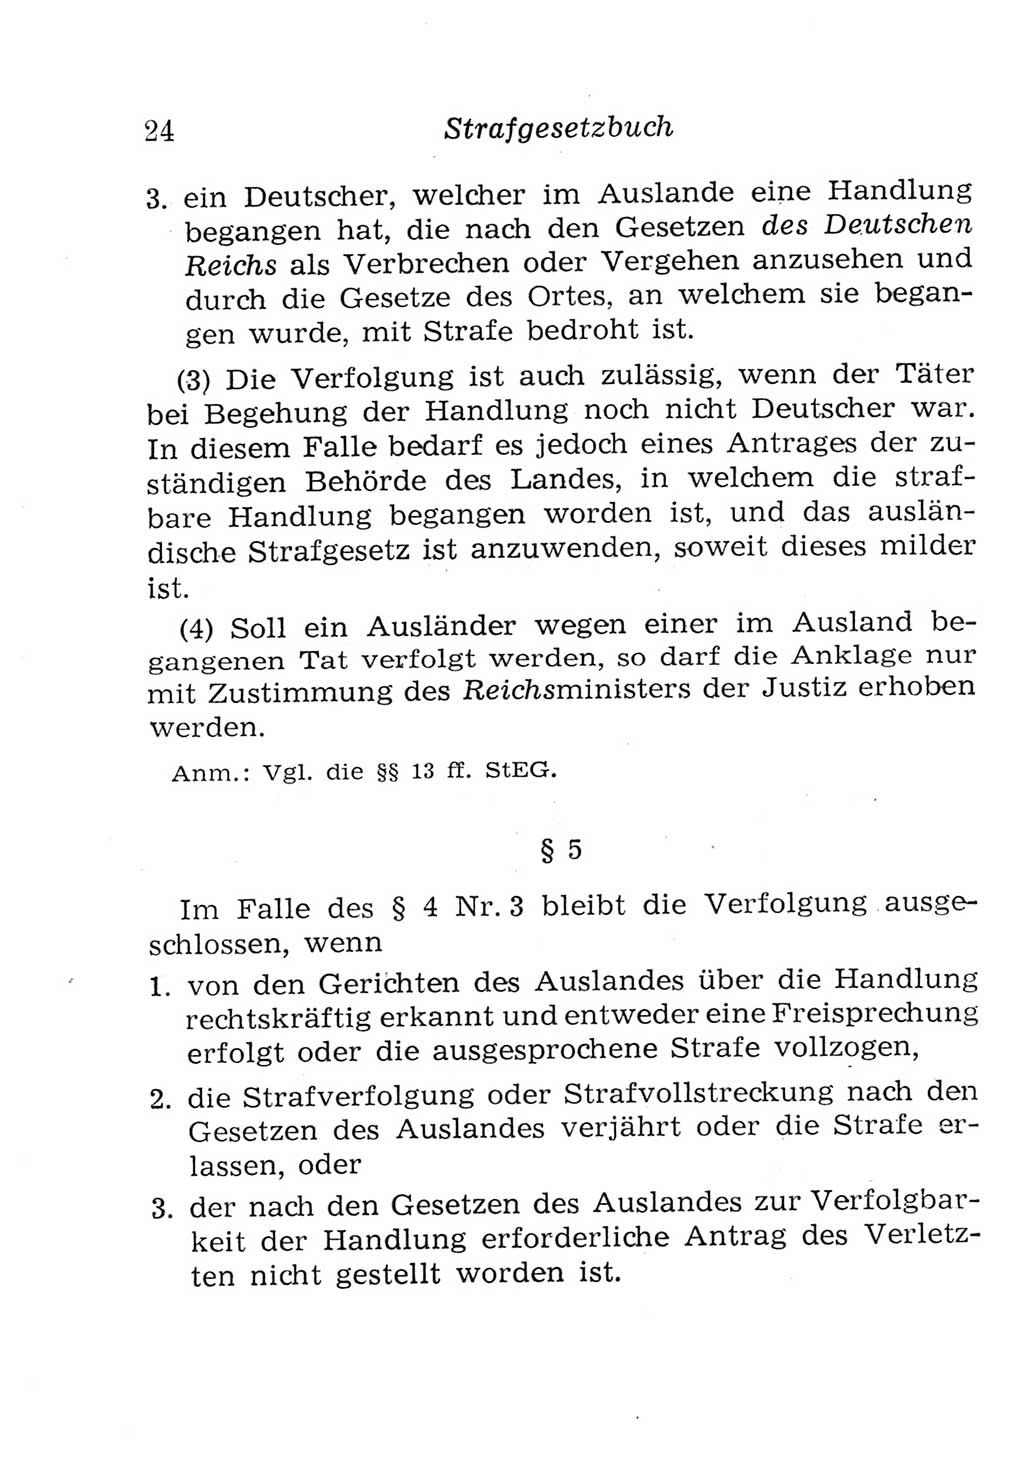 Strafgesetzbuch (StGB) und andere Strafgesetze [Deutsche Demokratische Republik (DDR)] 1957, Seite 24 (StGB Strafges. DDR 1957, S. 24)